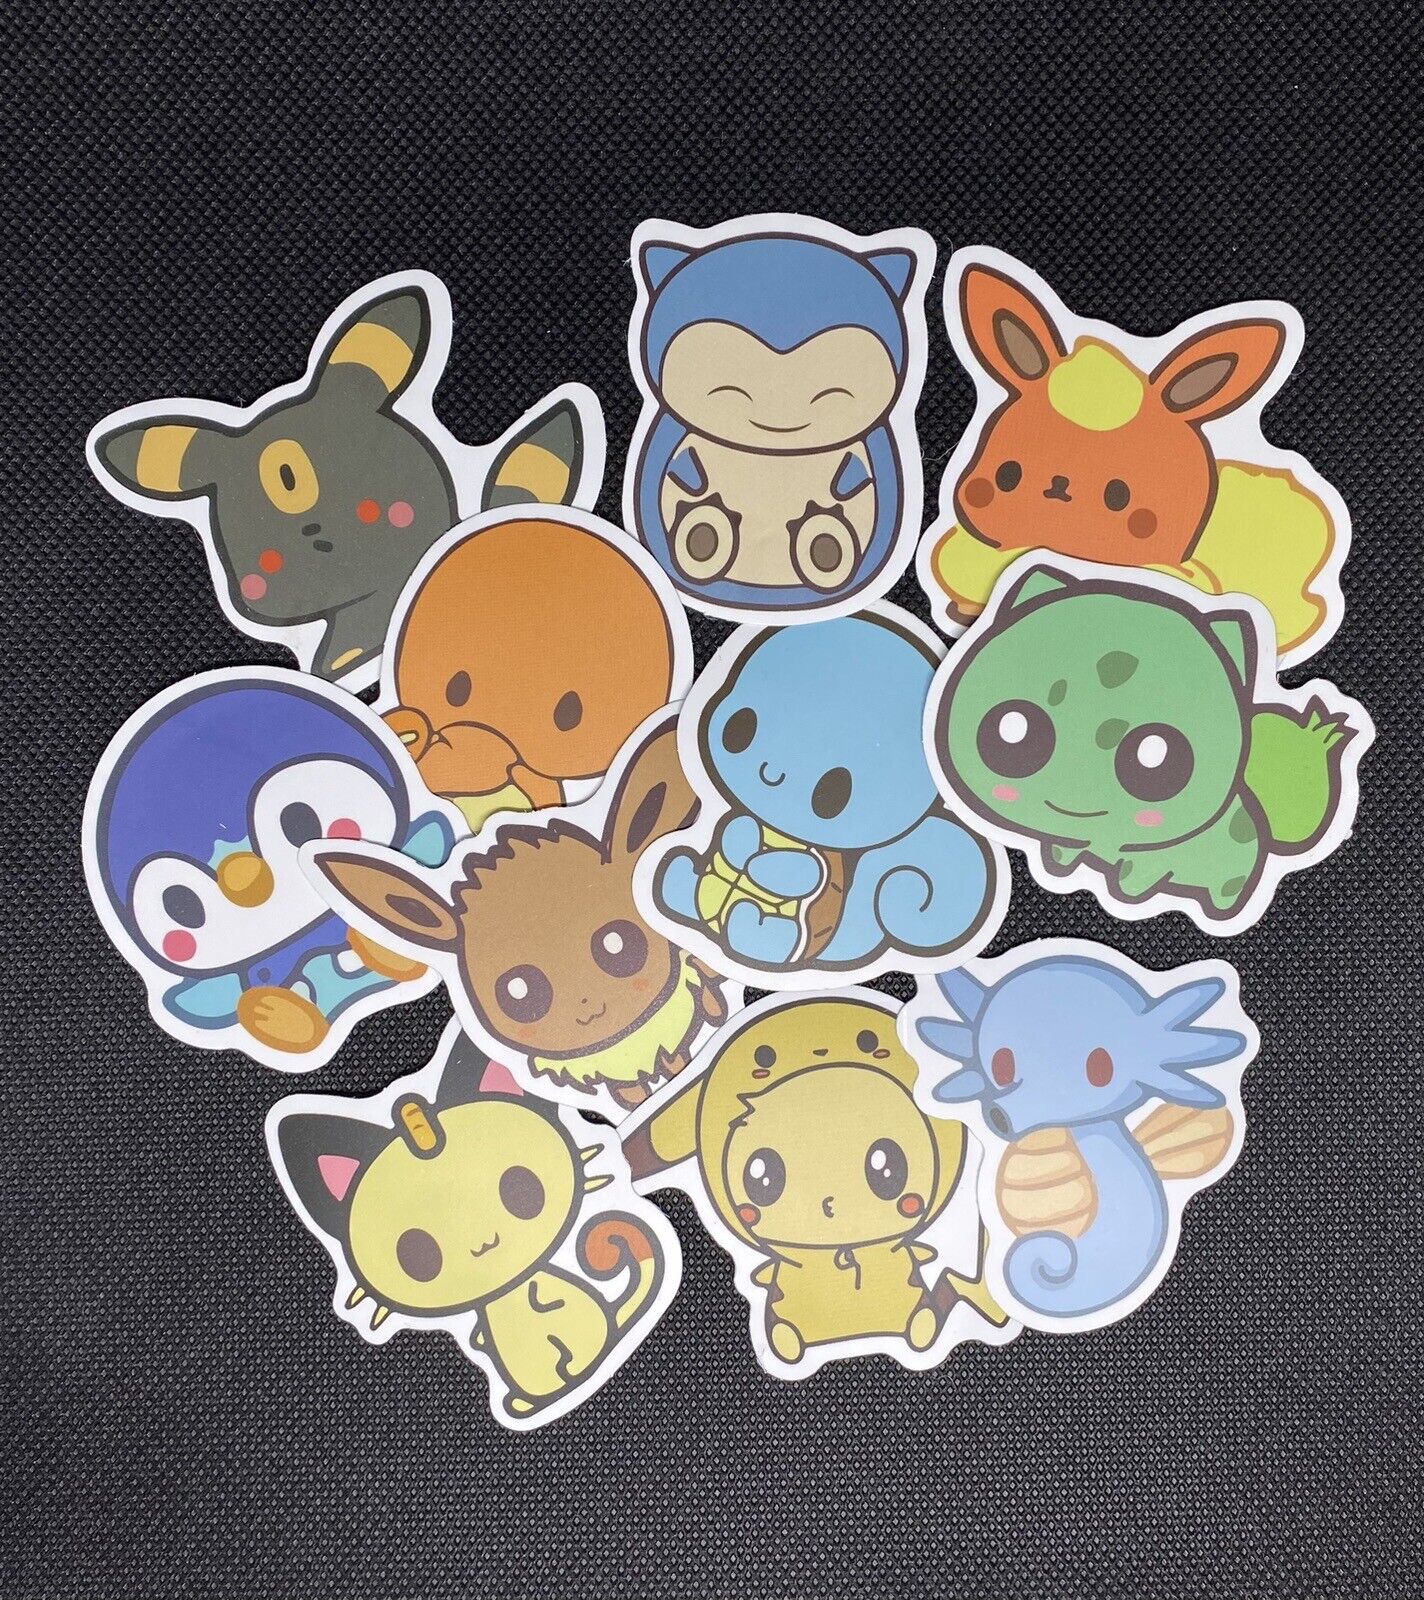 TAKARA TOMY 50pcs Pokémon Vinyl Stickers - Randomly Assorted- New